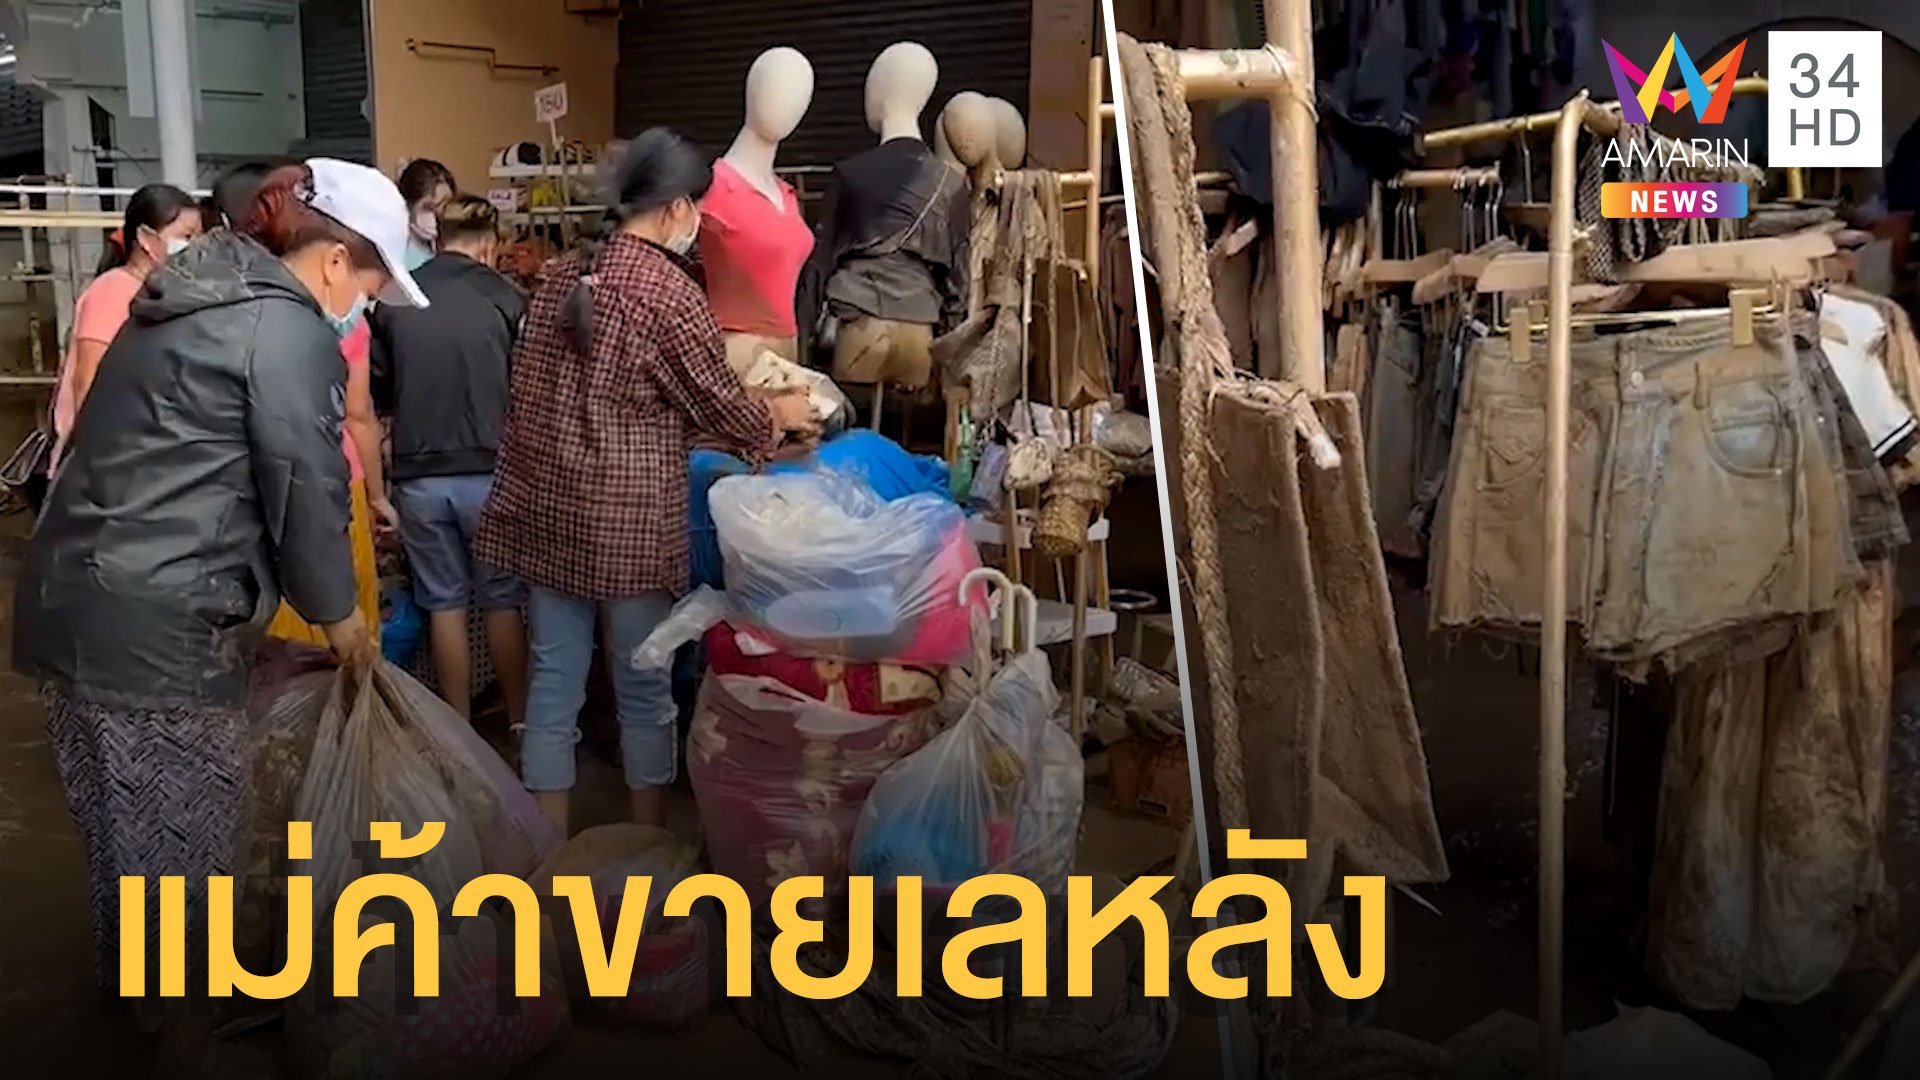 ร้านค้าแม่สายขายเลหลังขายของเปื้อนโคลน หลังน้ำท่วมตลาด | ข่าวเที่ยงอมรินทร์ | 15 ส.ค. 65 | AMARIN TVHD34